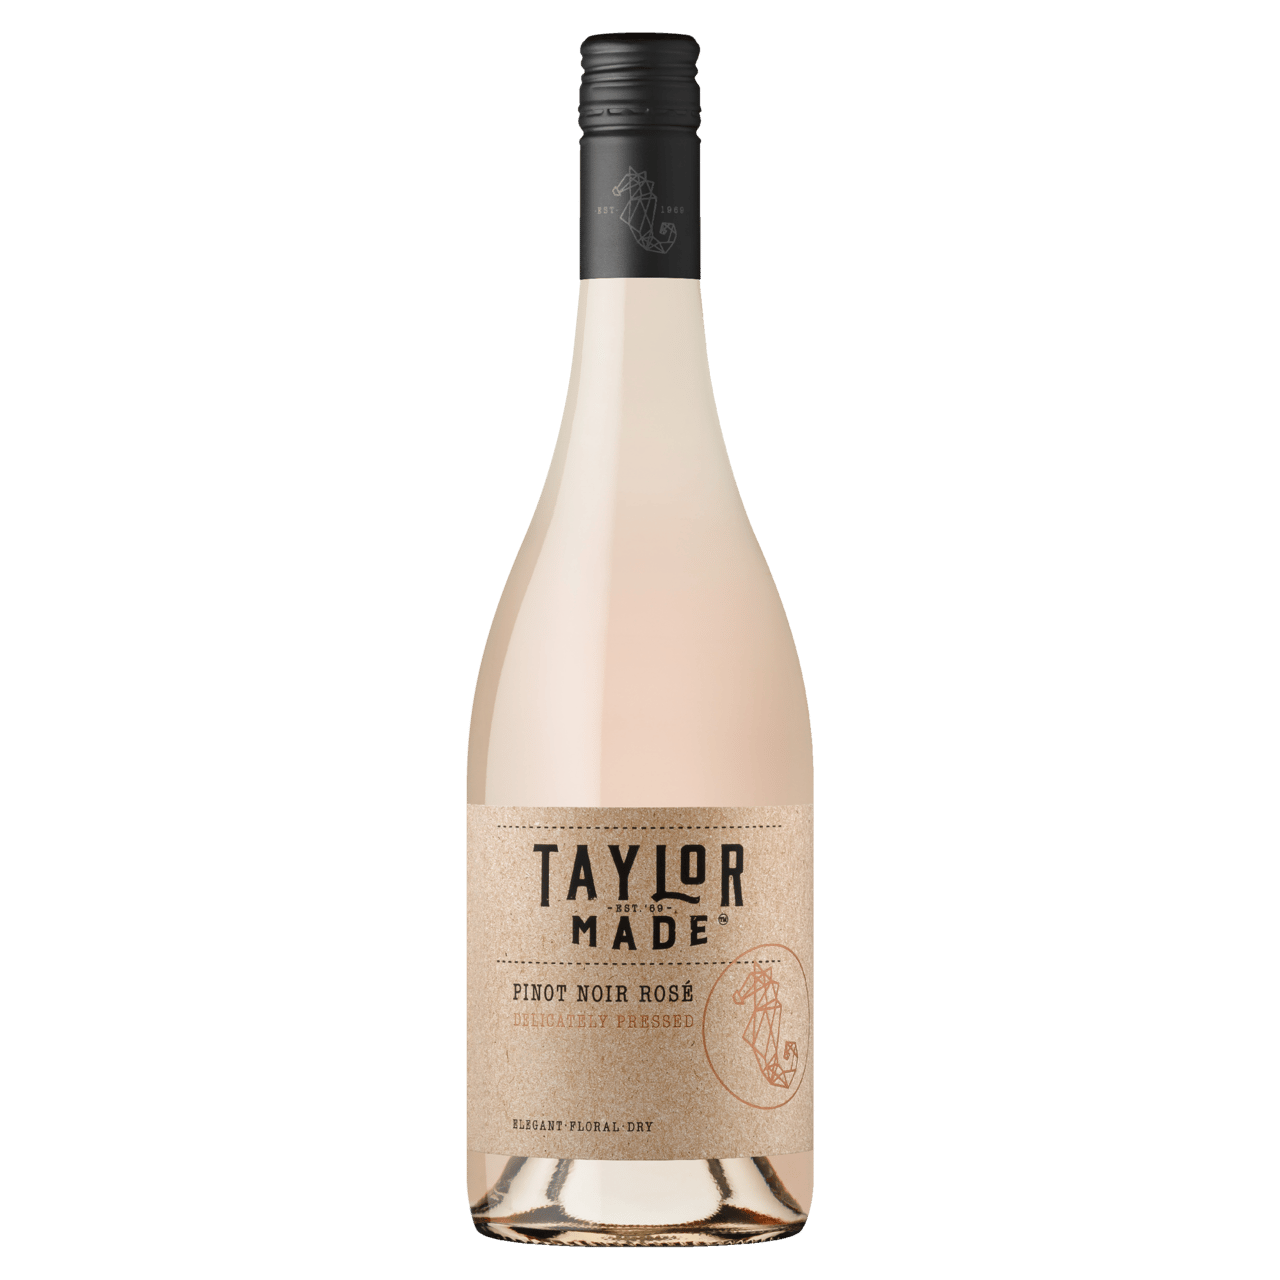 Taylors Taylor Made Pinot Noir Rosé